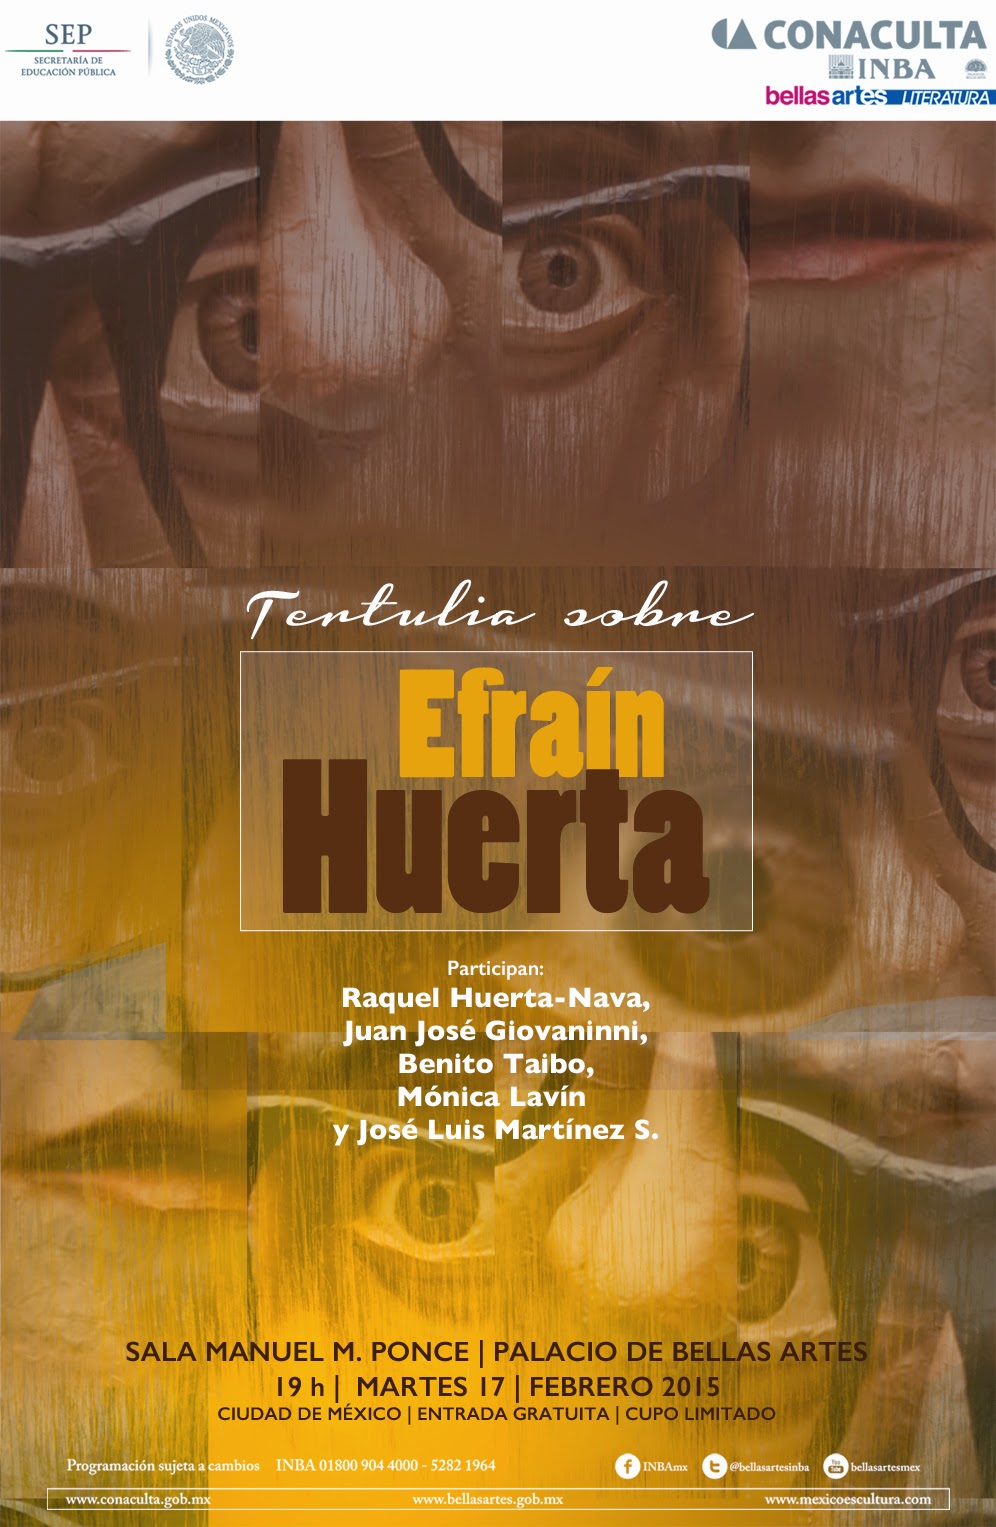 Recuerdan a Efraín Huerta a 33 años de su fallecimiento en el Palacio de Bellas Artes